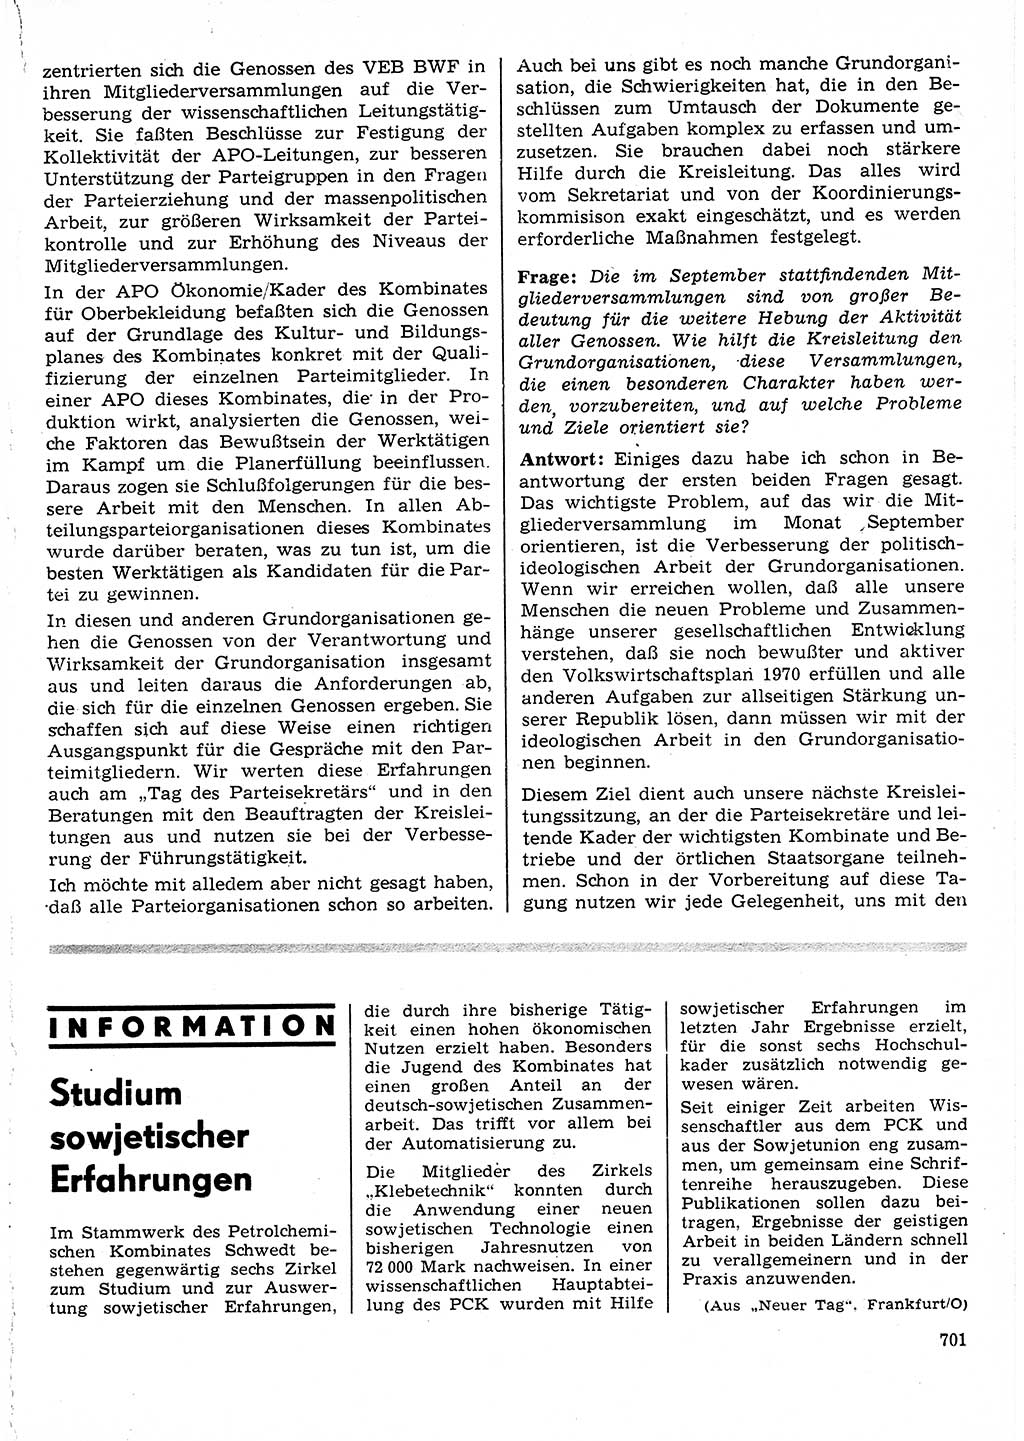 Neuer Weg (NW), Organ des Zentralkomitees (ZK) der SED (Sozialistische Einheitspartei Deutschlands) für Fragen des Parteilebens, 25. Jahrgang [Deutsche Demokratische Republik (DDR)] 1970, Seite 701 (NW ZK SED DDR 1970, S. 701)